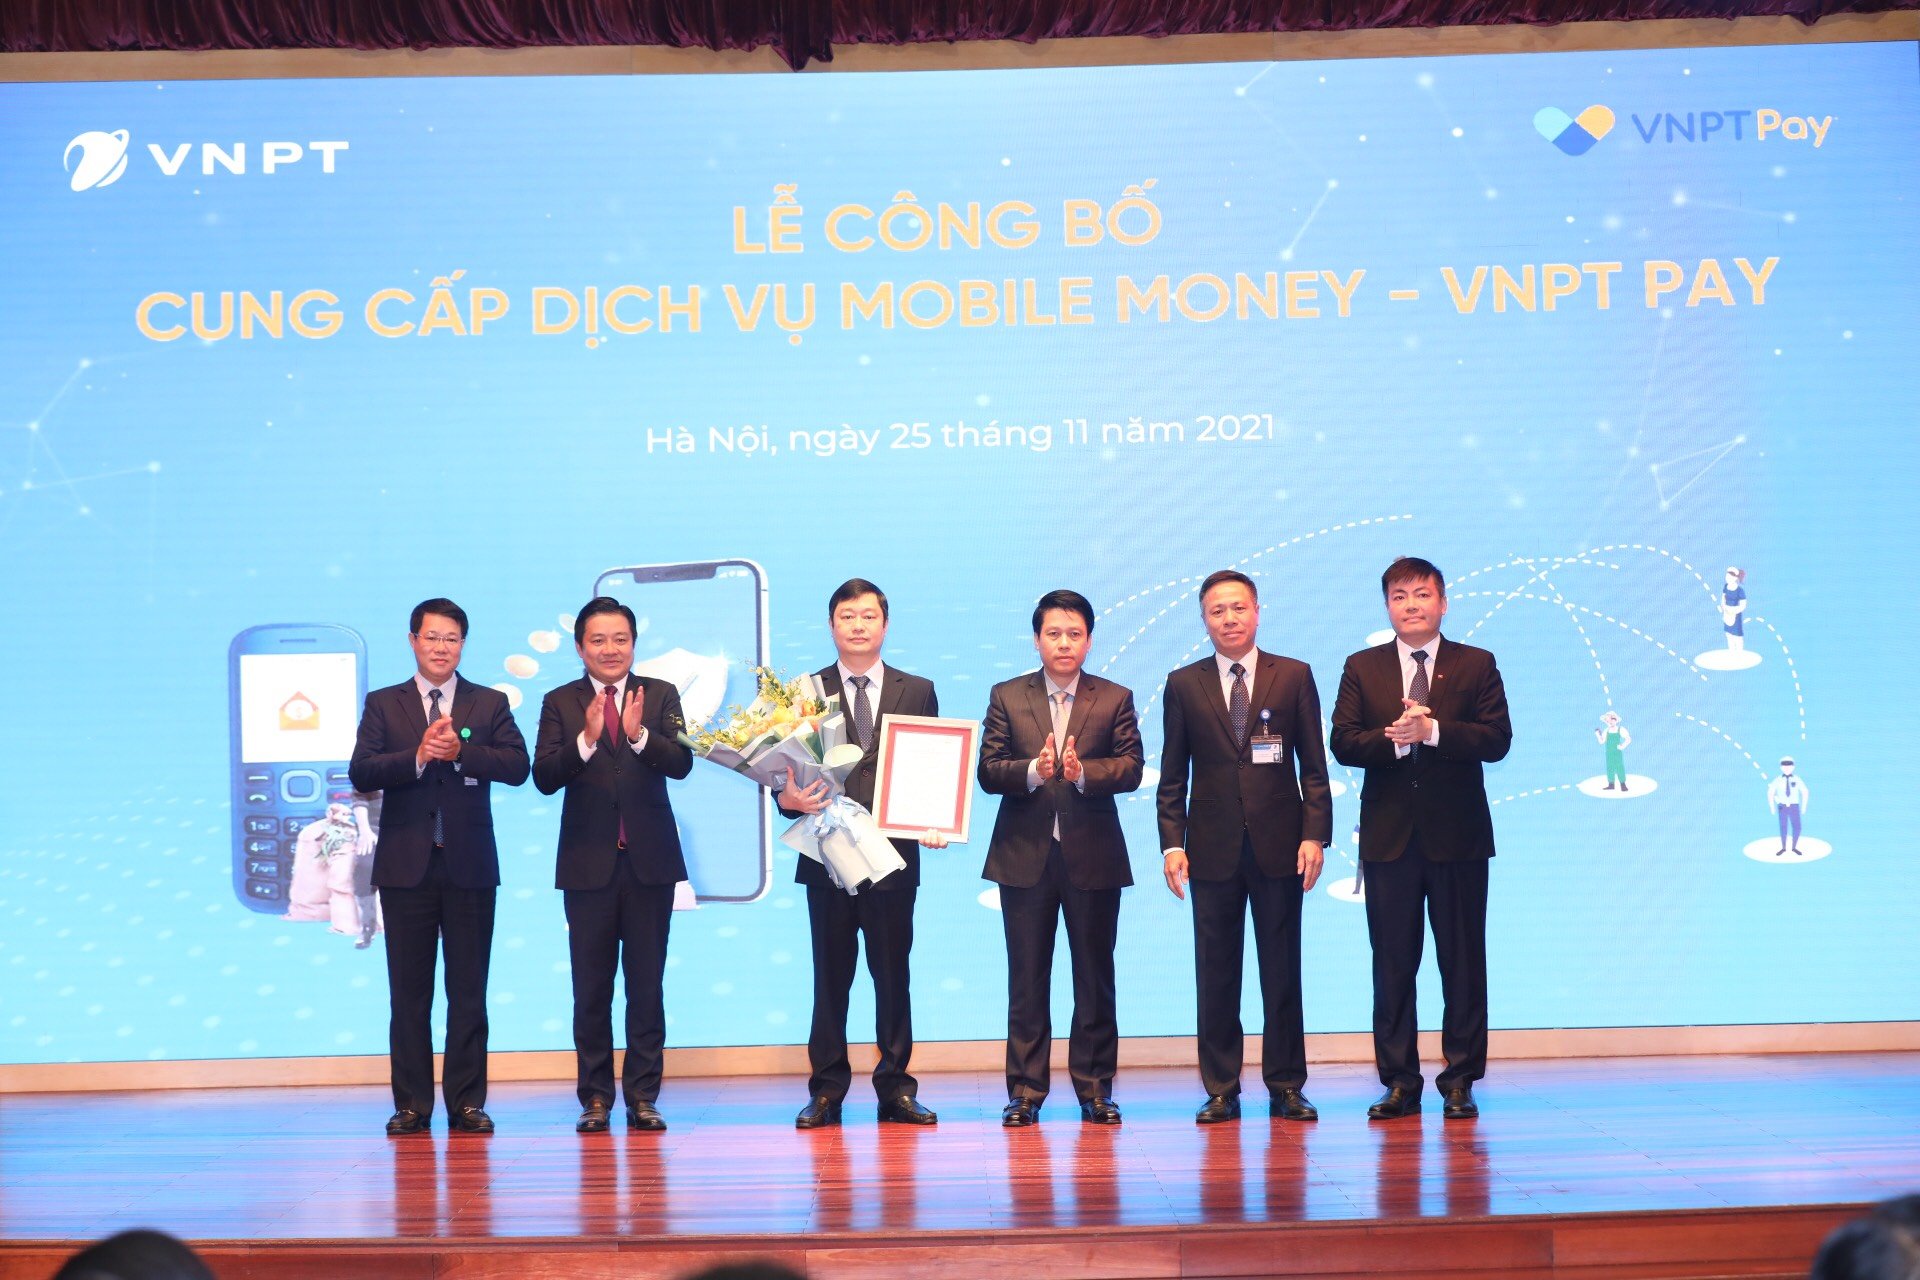 Đại diện VNPT nhận Giấy phép cung cấp dịch vụ Mobile Money tại buổi lễ.